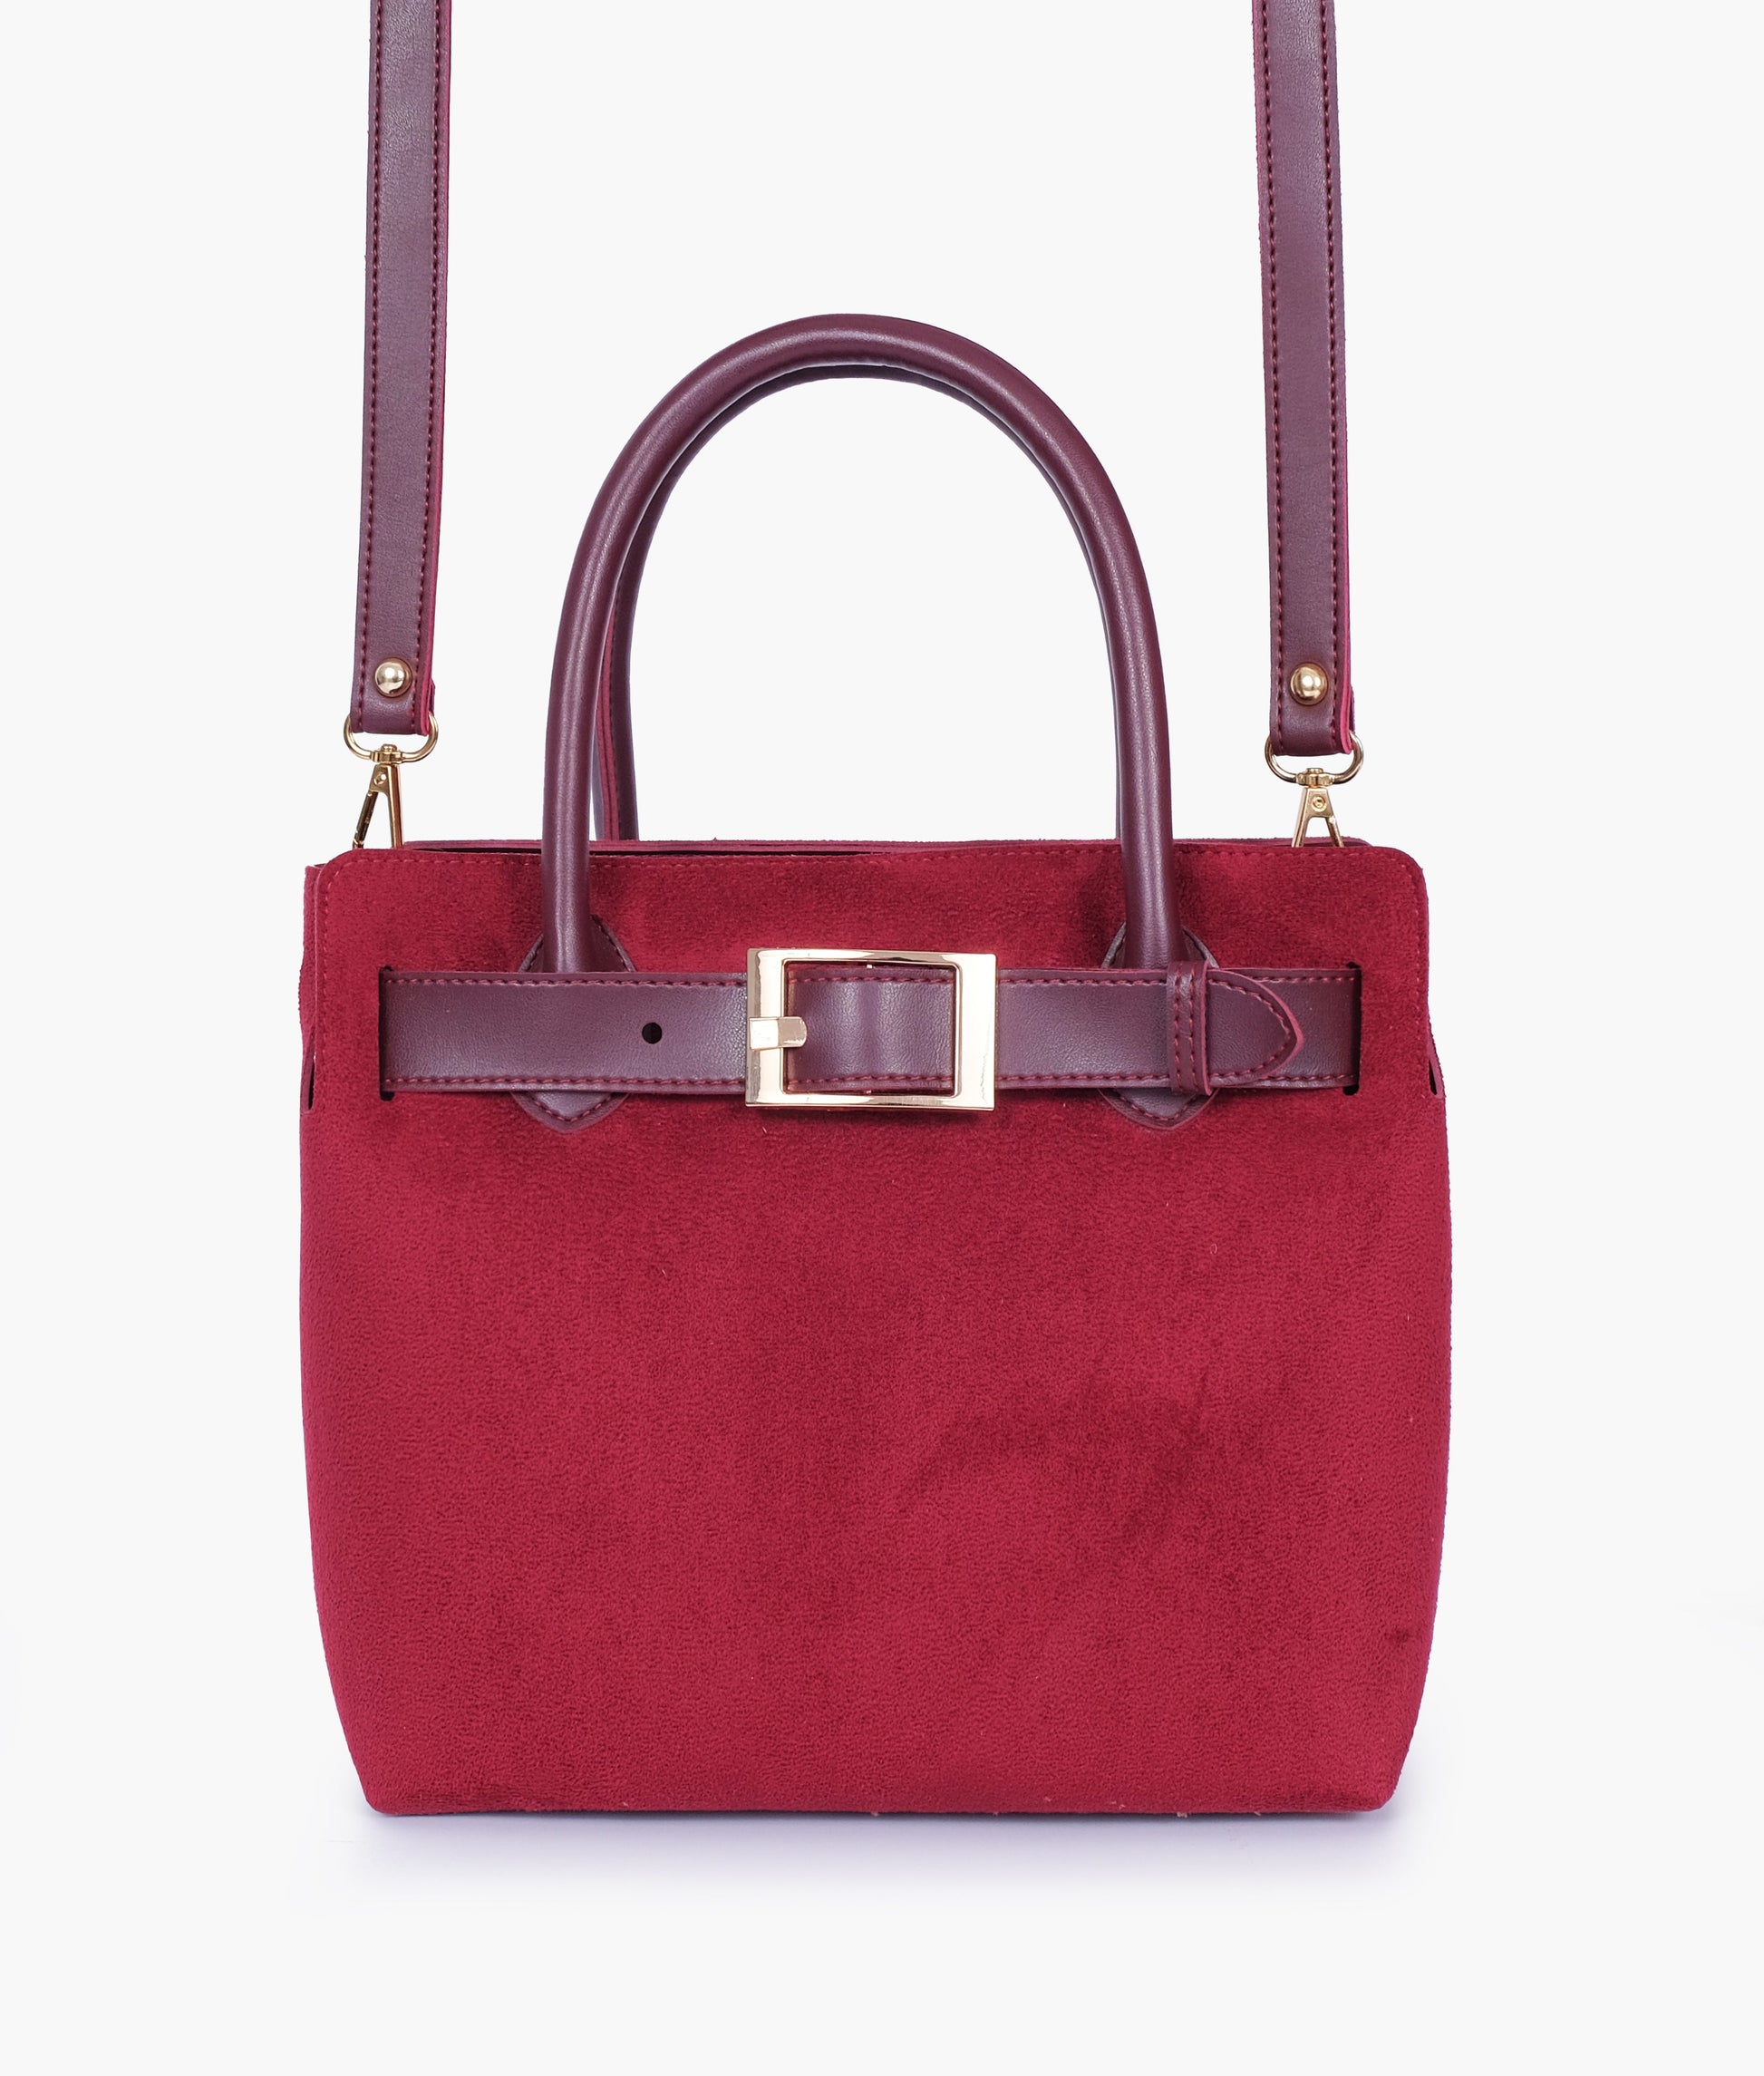 Buy Burgundy Suede Handbag With Front Buckle - Brown in Pakistan